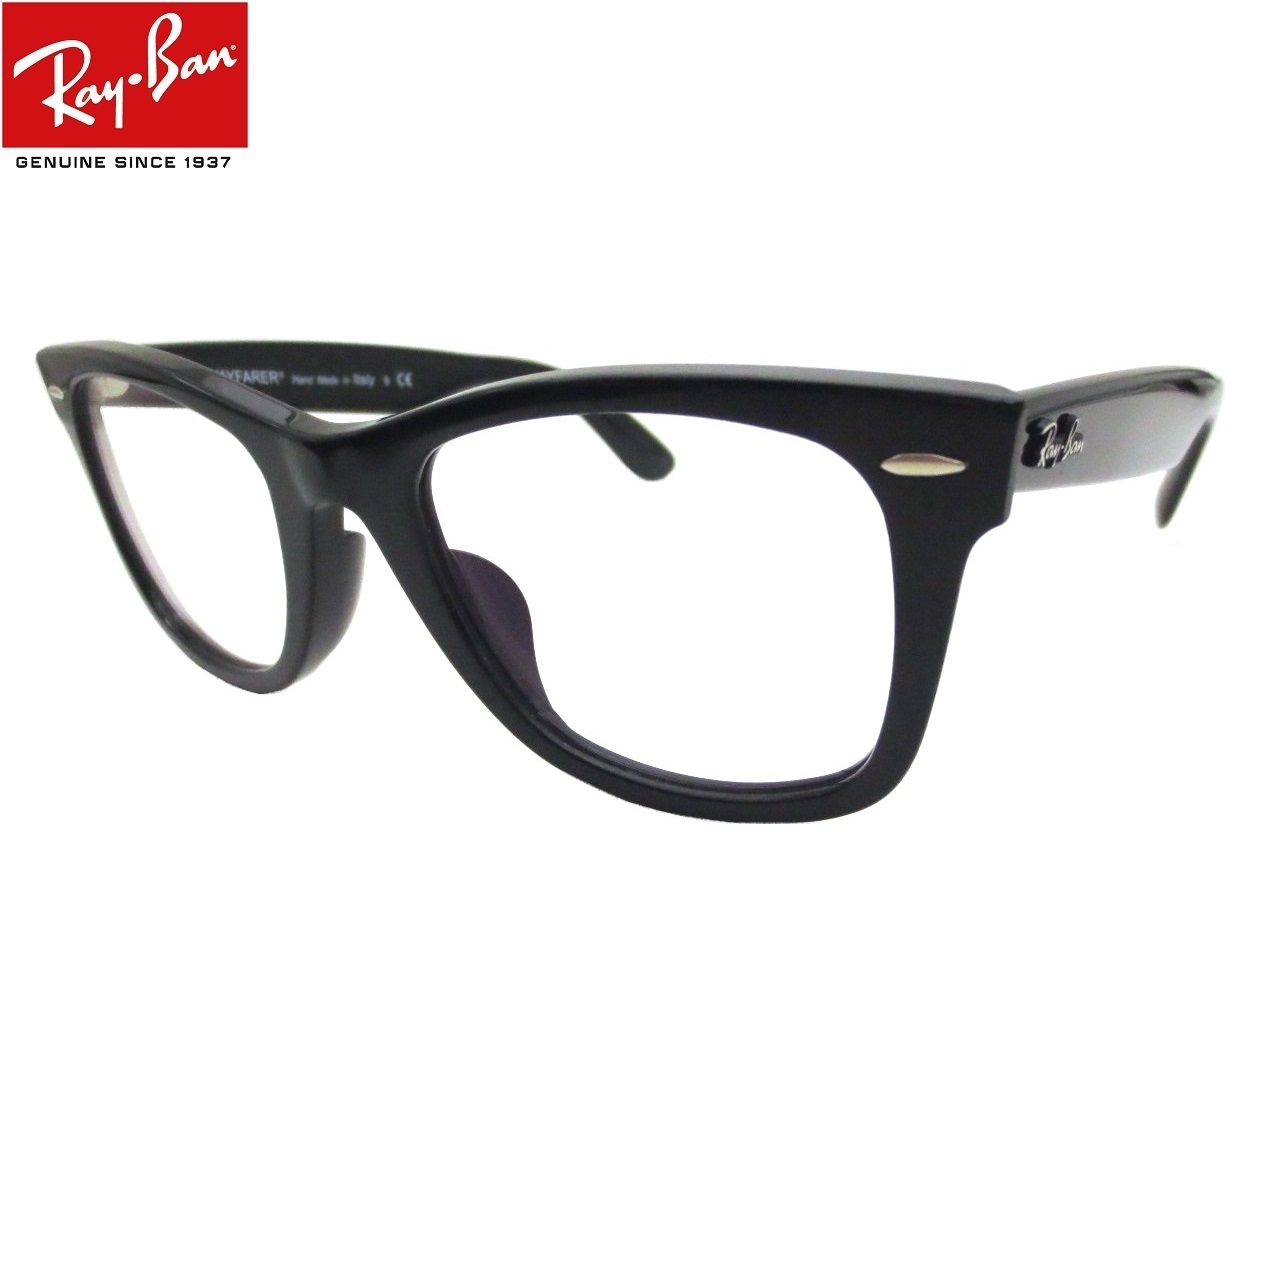 楽天市場 レイバン サングラス ウェイファーラー Ray Ban Rb2140f 901 52 Wayfarerウェイファーラーサングラスをメガネ 仕様に 度付き眼鏡 度付きメガネ 調光レンズ対応 ミラリジャパンメーカー保証書付 Eye Max